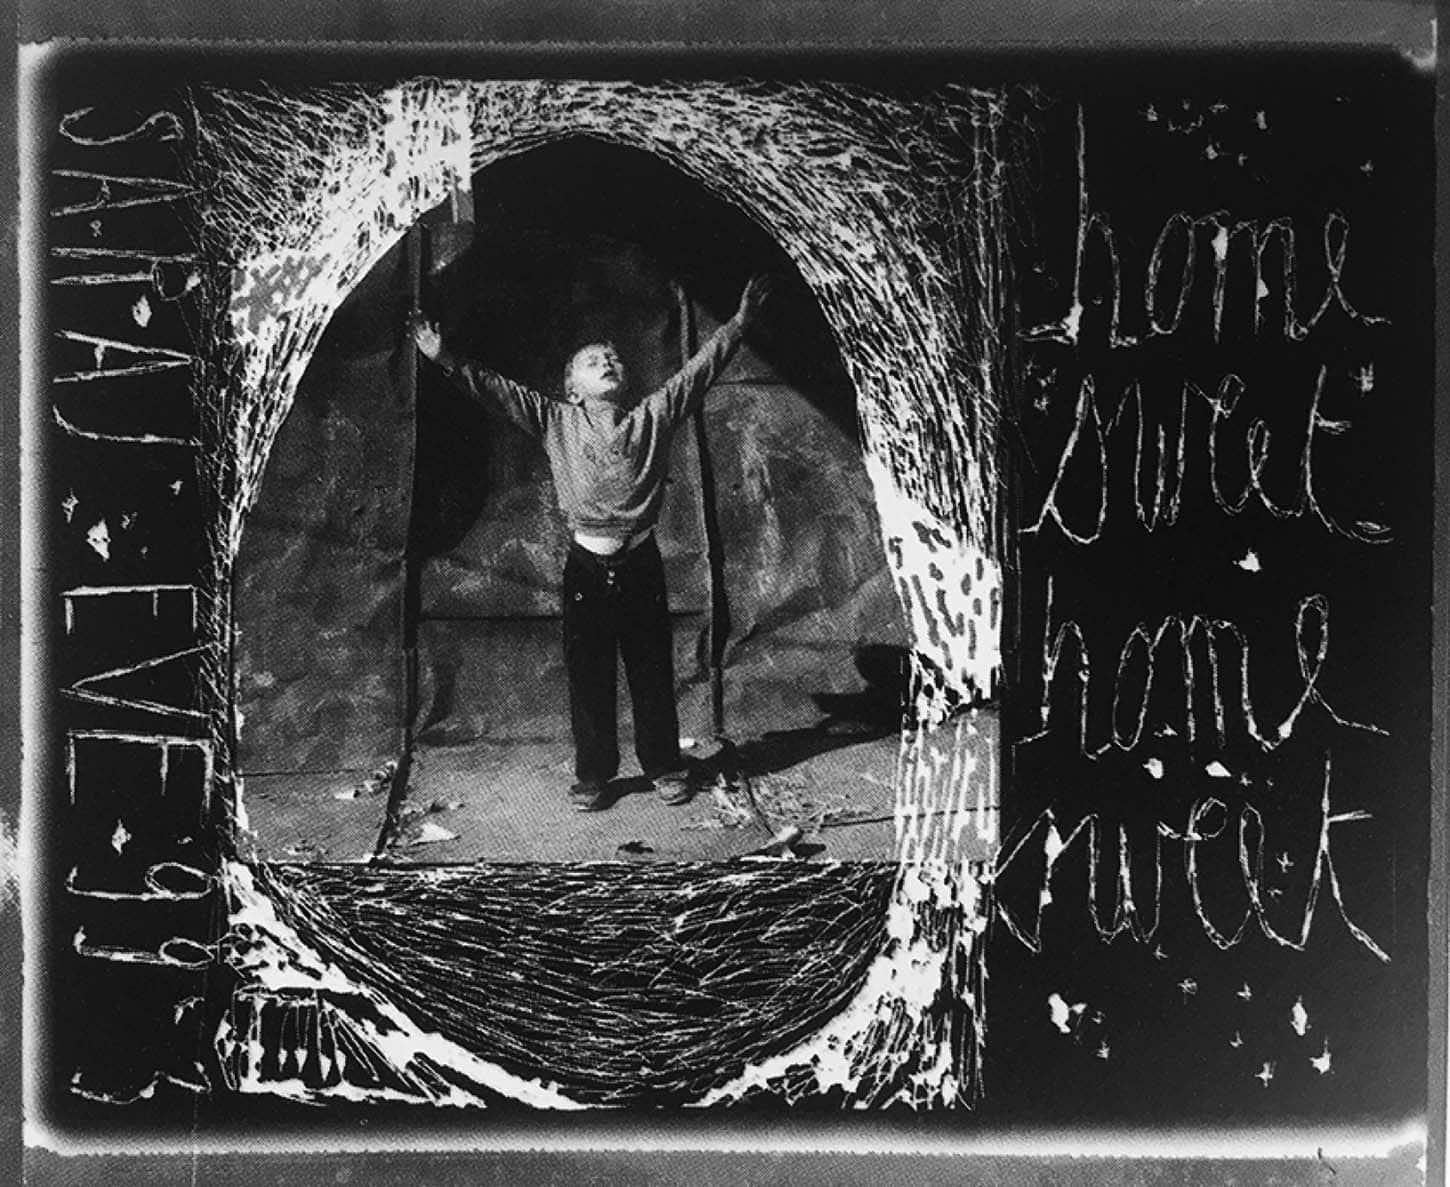 Le Showroom, Louis Jammes, oeuvres historiques, Série les anges de Sarajevo
Sarajevo, Bosnie, 1993
Grattage sur Polaroïd, 11 x 11 cm, exemplaire unique